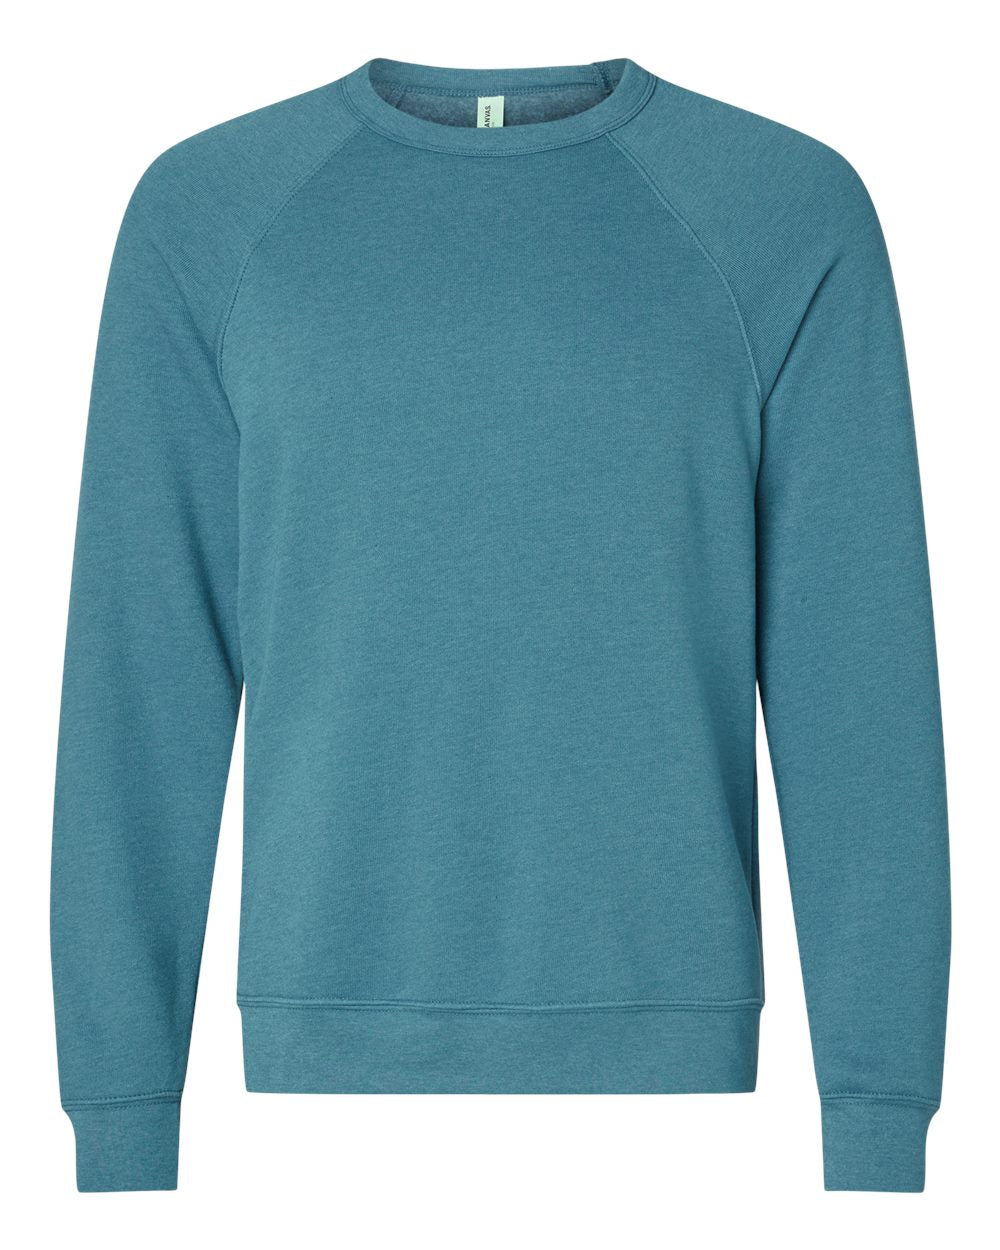 Bella + Canvas Fleece Crewneck Sweatshirt Size 2XLarge - 3XLarge